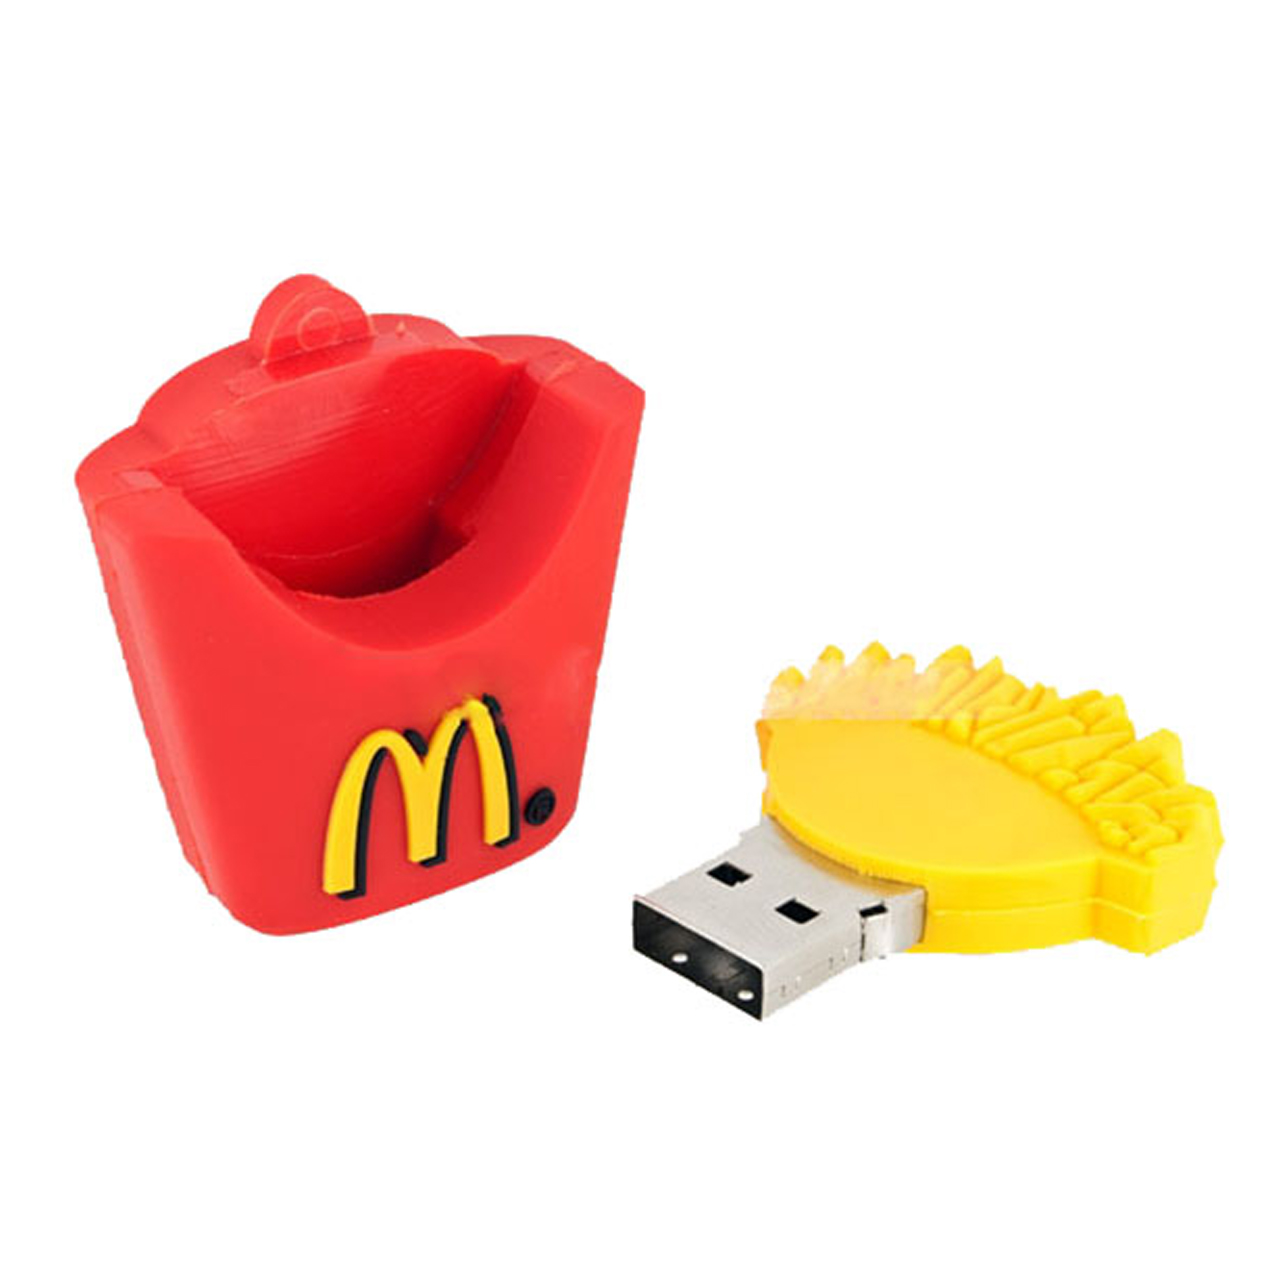 فلش مموری دایا دیتا طرح McDonalds مدل PF1059-USB3 ظرفیت 64 گیگابایت